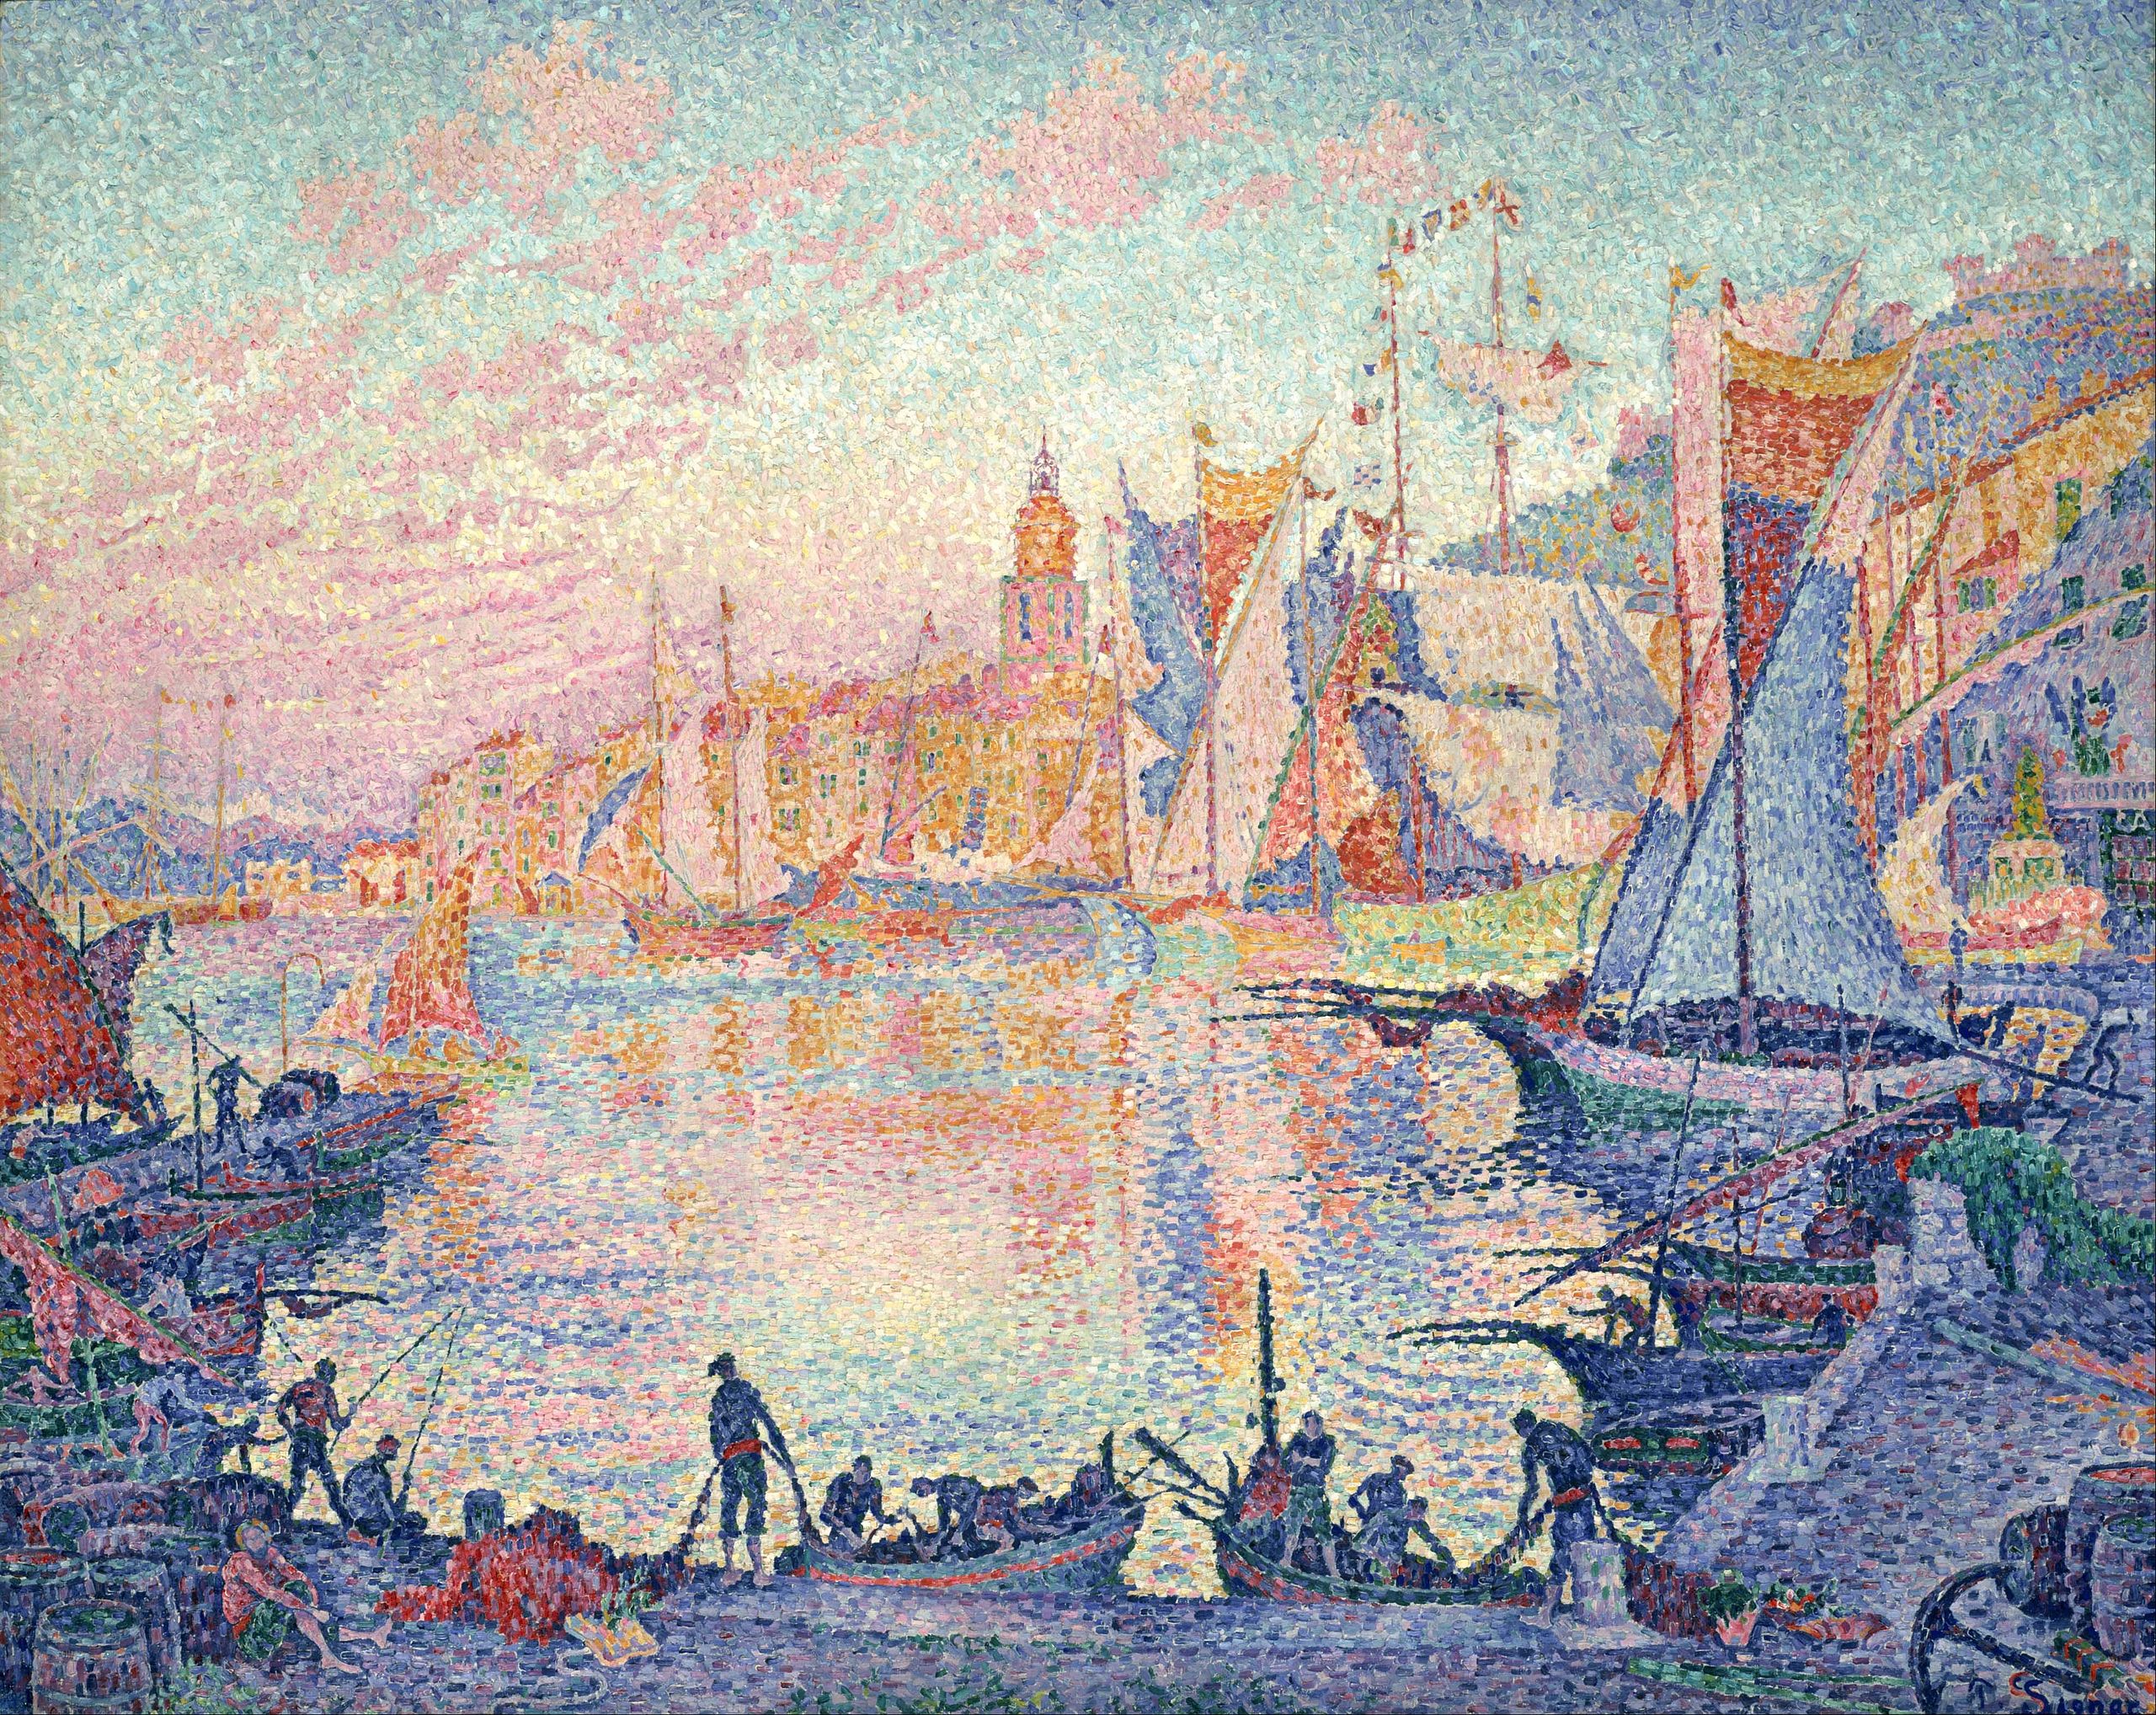 El puerto de Saint-Tropez by Paul Signac - 1901-1902 - 131 x 161.5 cm Museo Nacional de Arte Occidental, Tokio